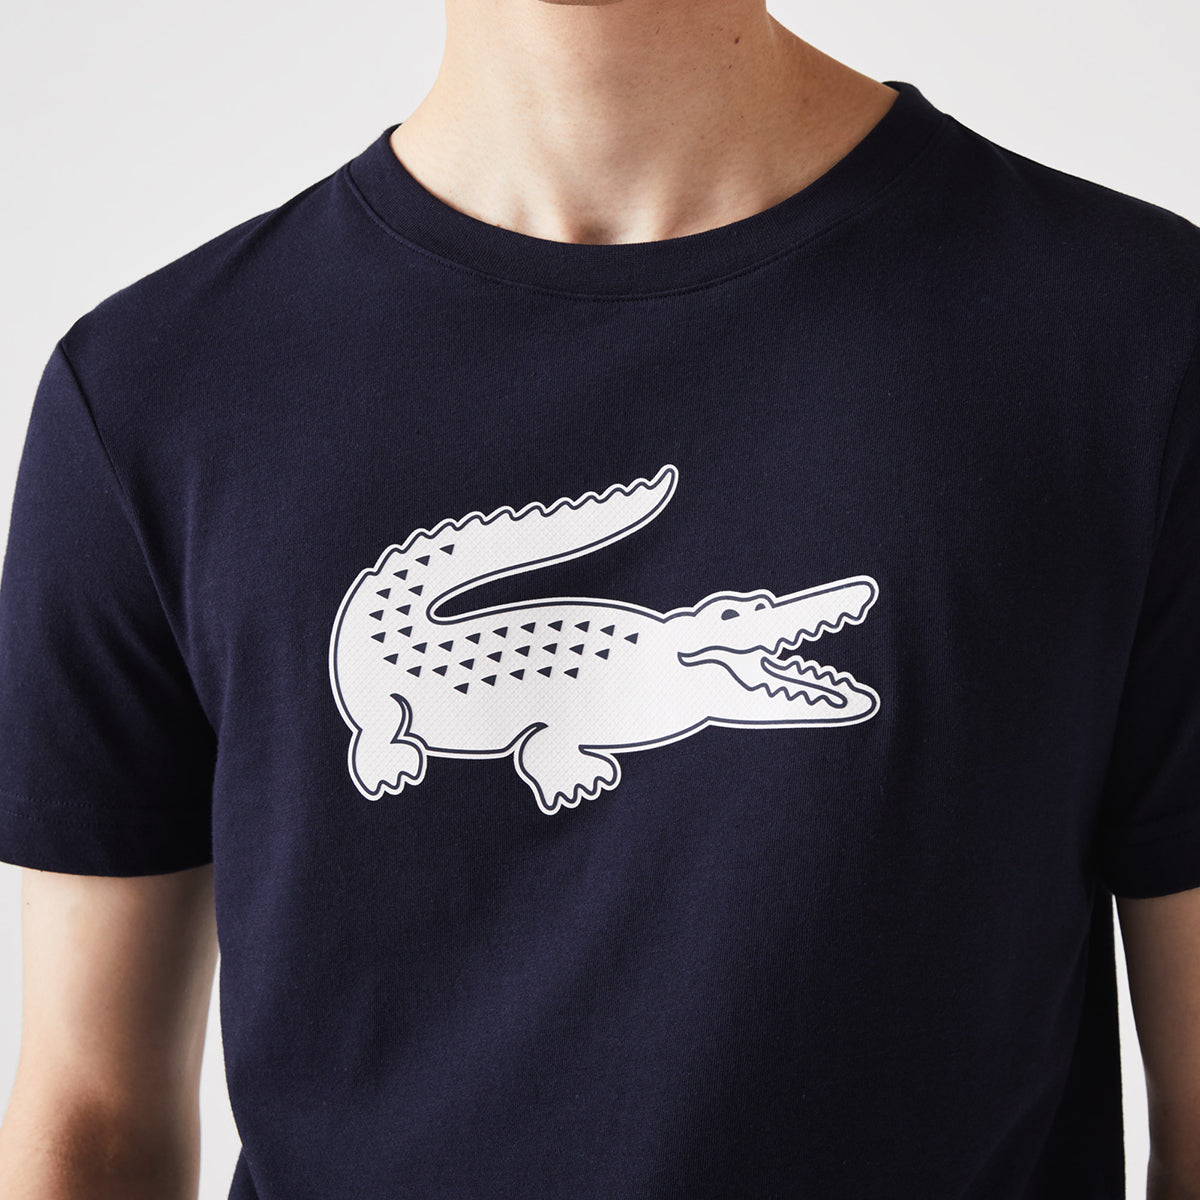 Lacoste Crew Neck Crocodile Print Organic Cotton T-Shirt | LEVISONS